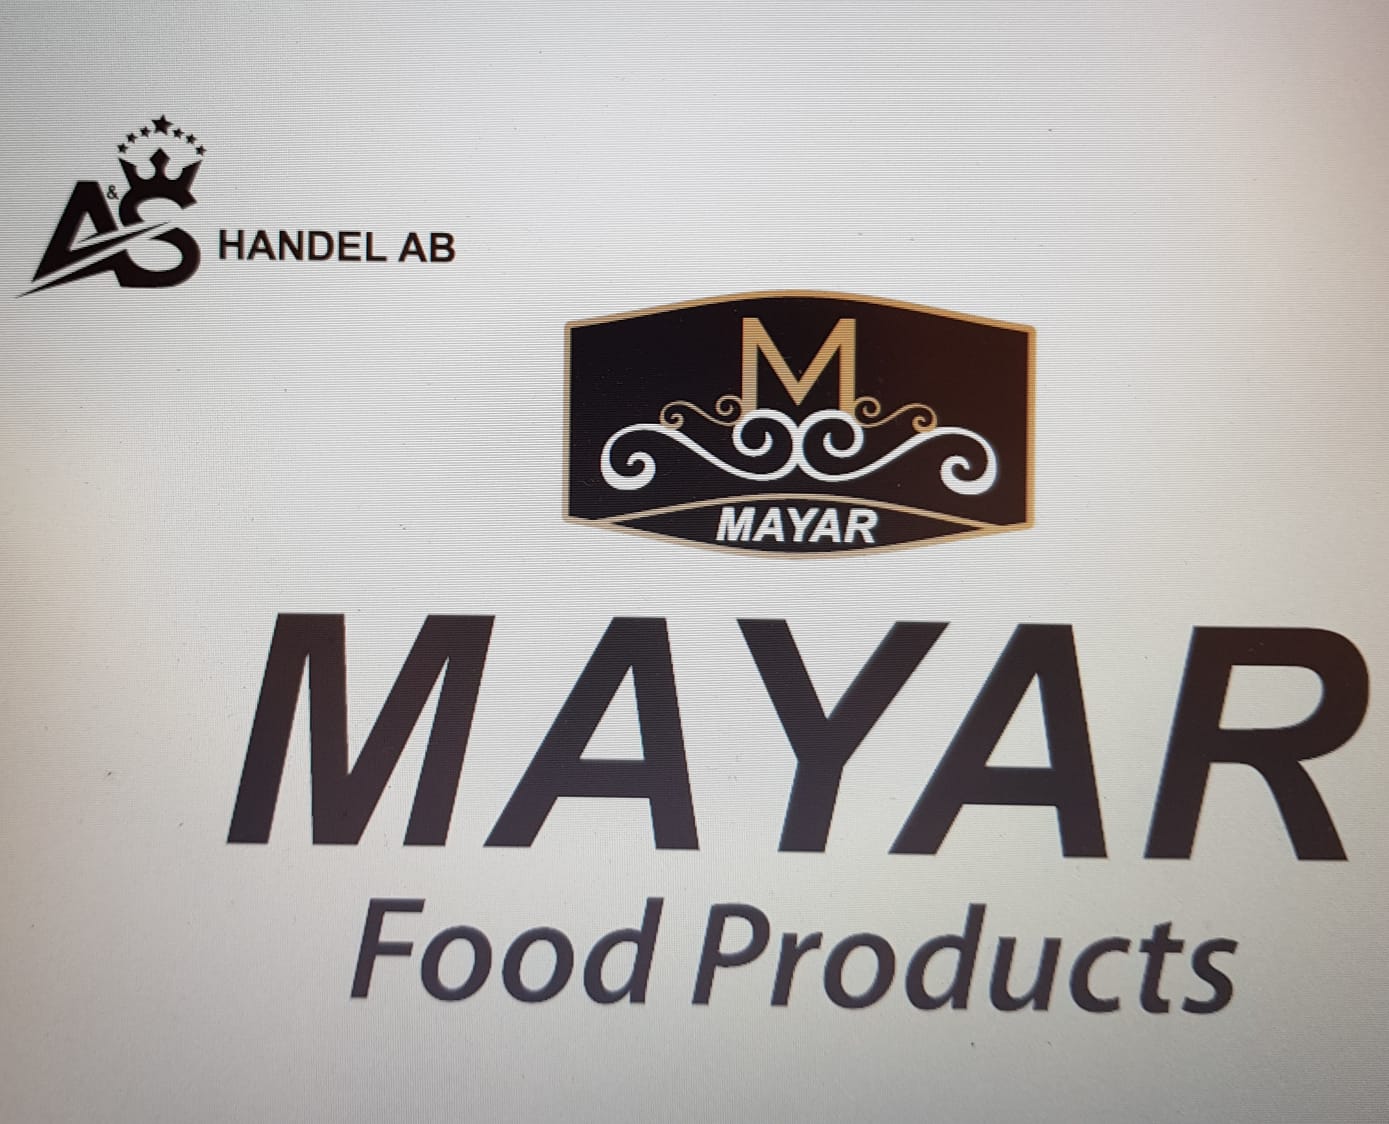 MAYAR FOOD PRODUCTS / A&S HANDEL AB M MAYAR 